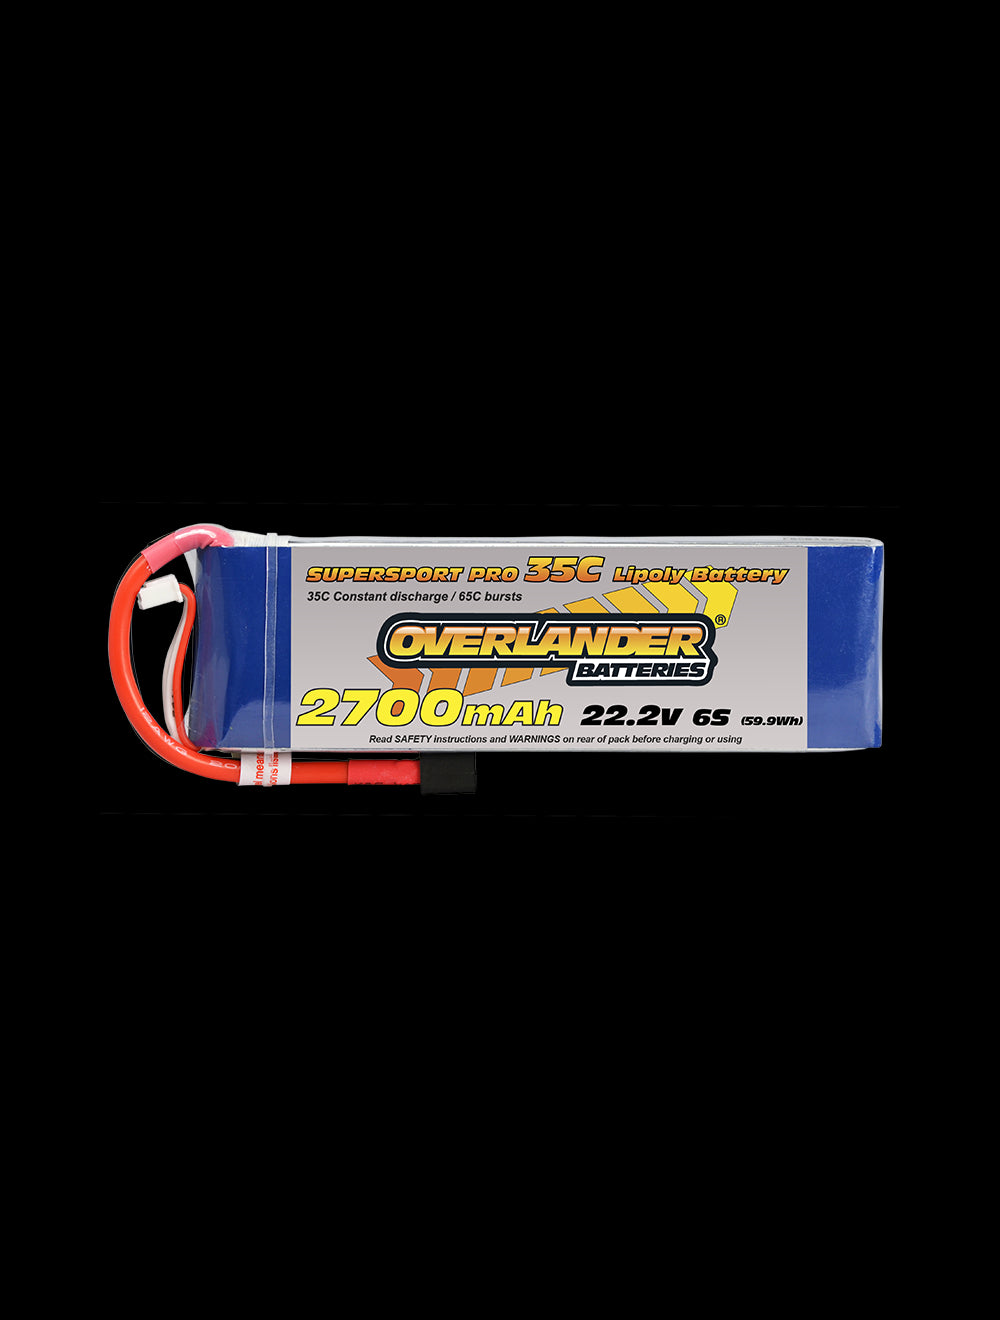 Overlander 2700mAh 22.2V 6S 35C Supersport Pro LiPo Battery - XT60 Connector 2482